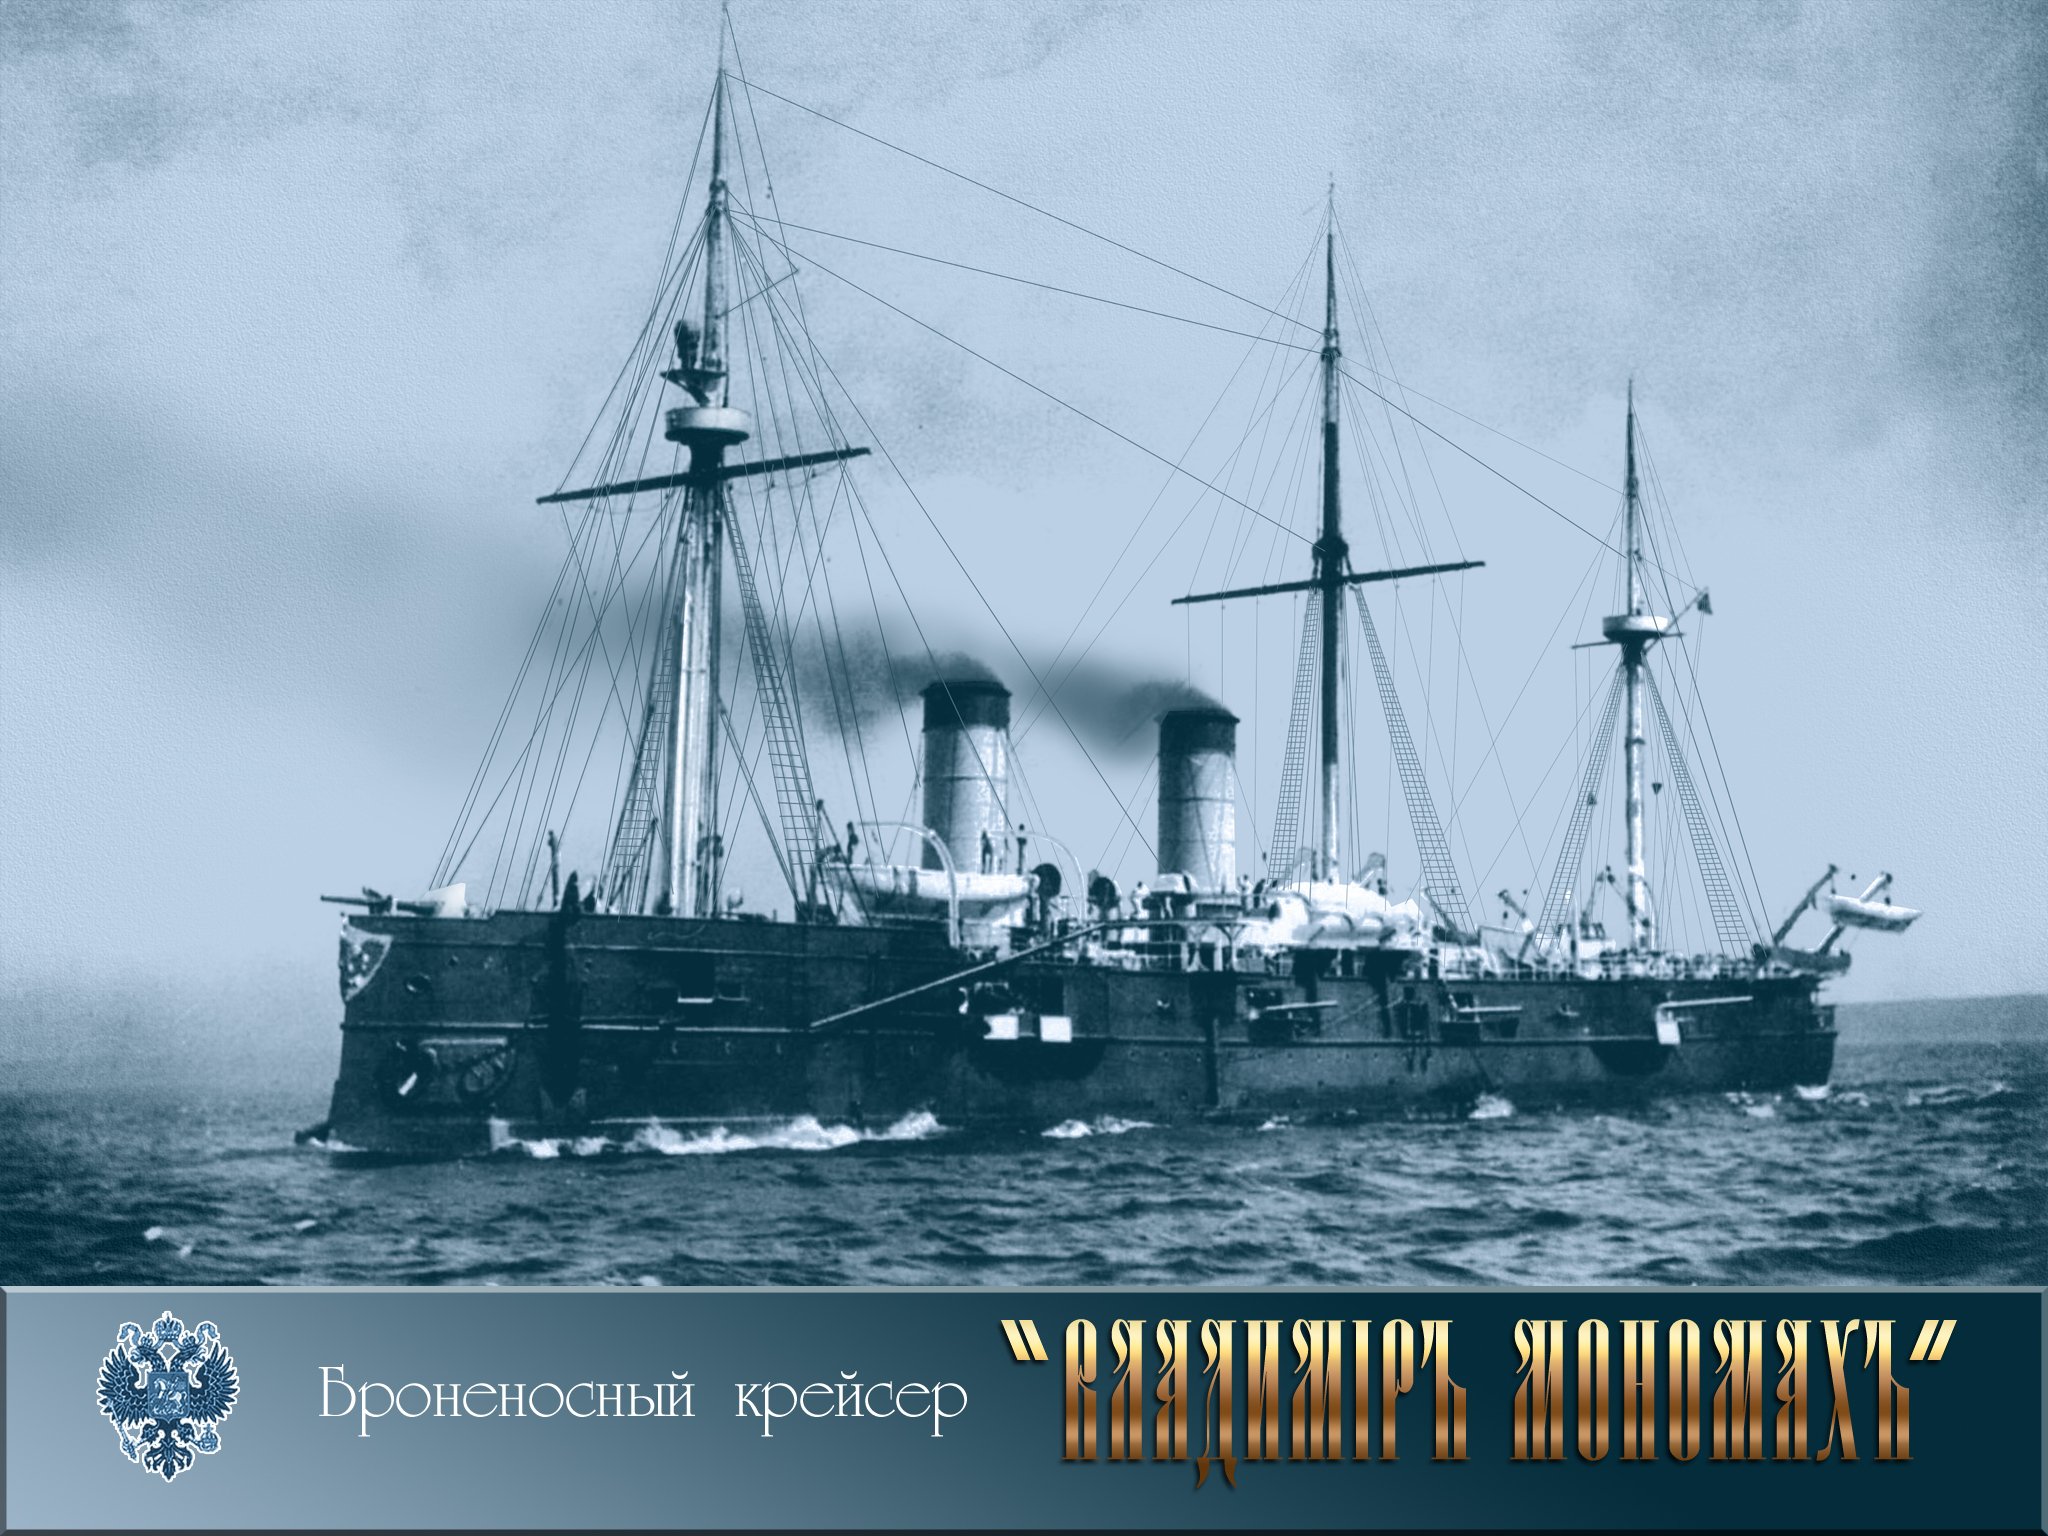 Название русских кораблей